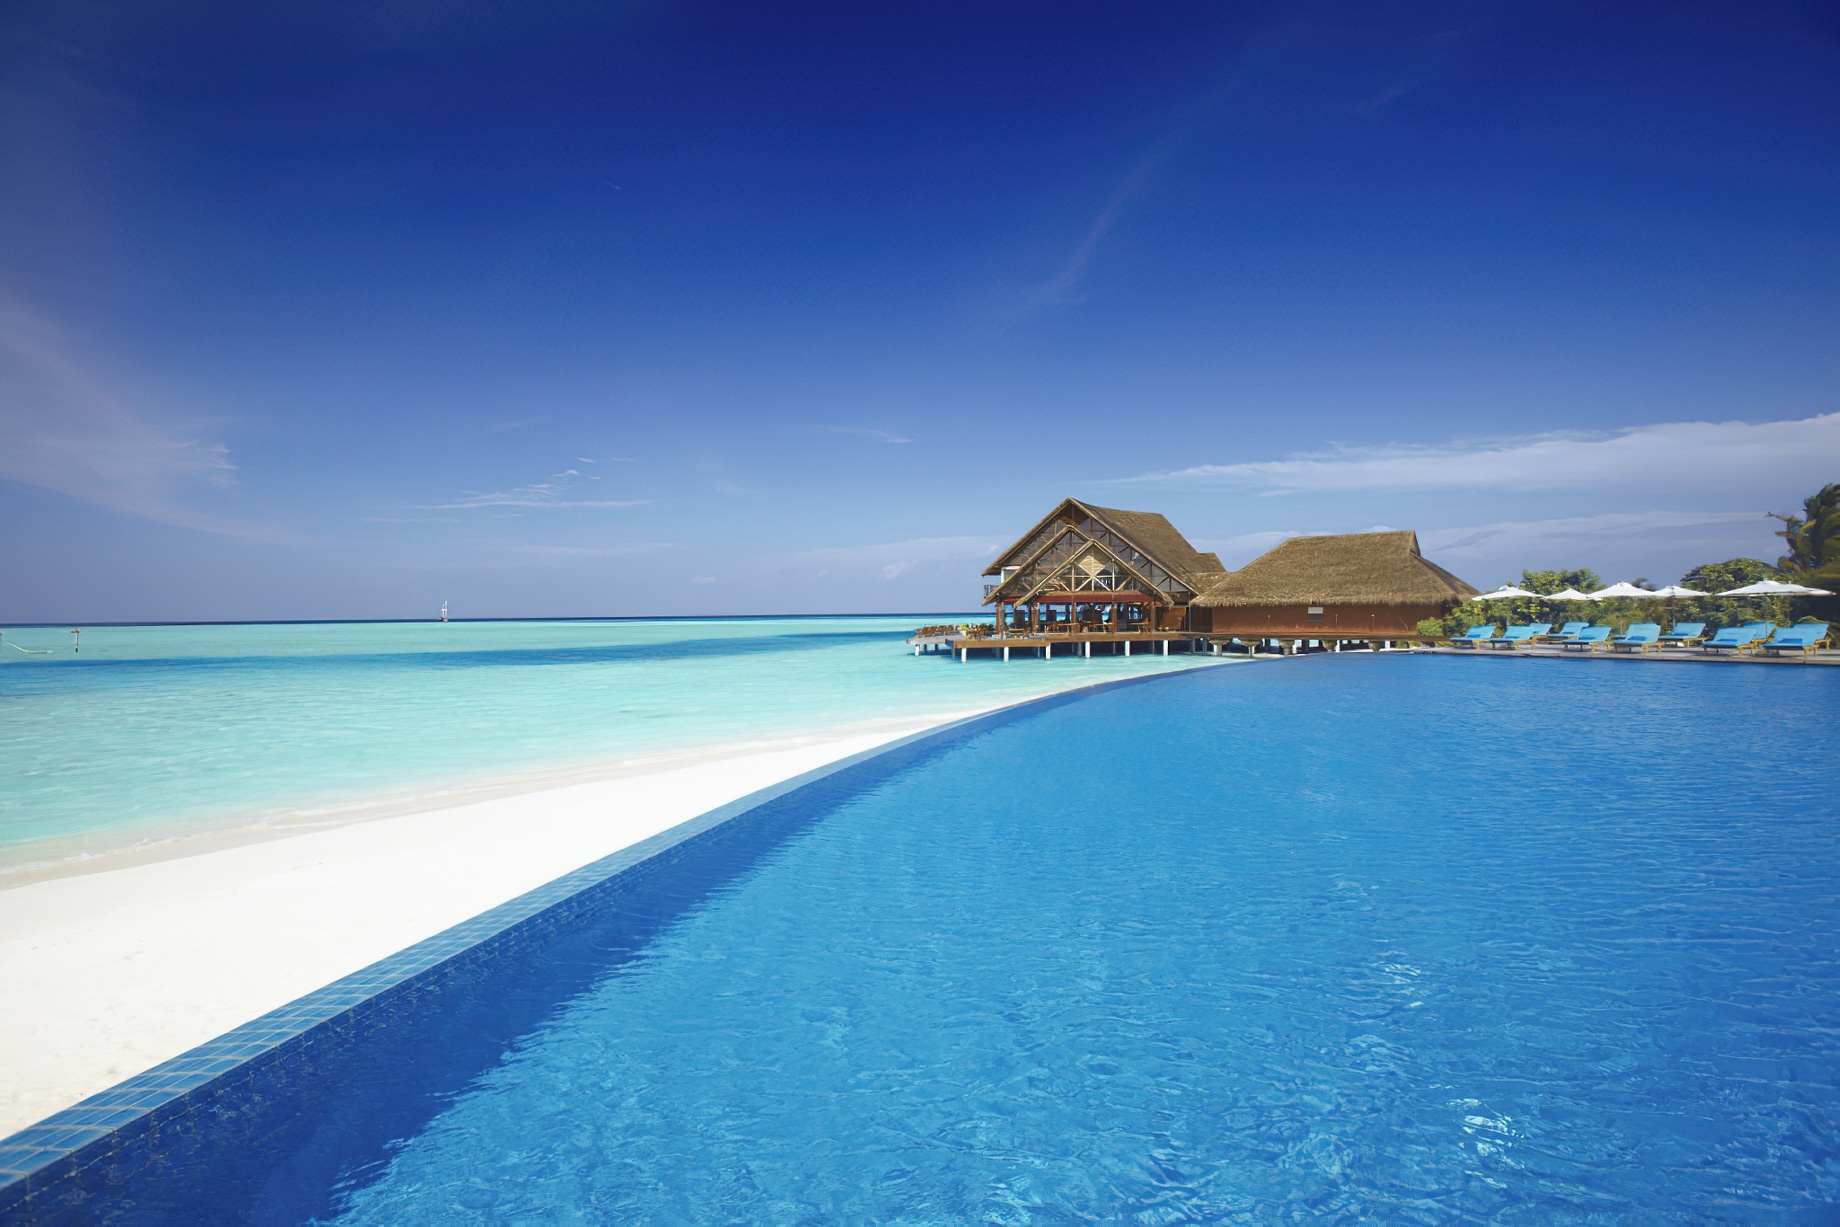 Anantara Thigu Maldives Resort – South Male Atoll, Maldives – Resort Pool View